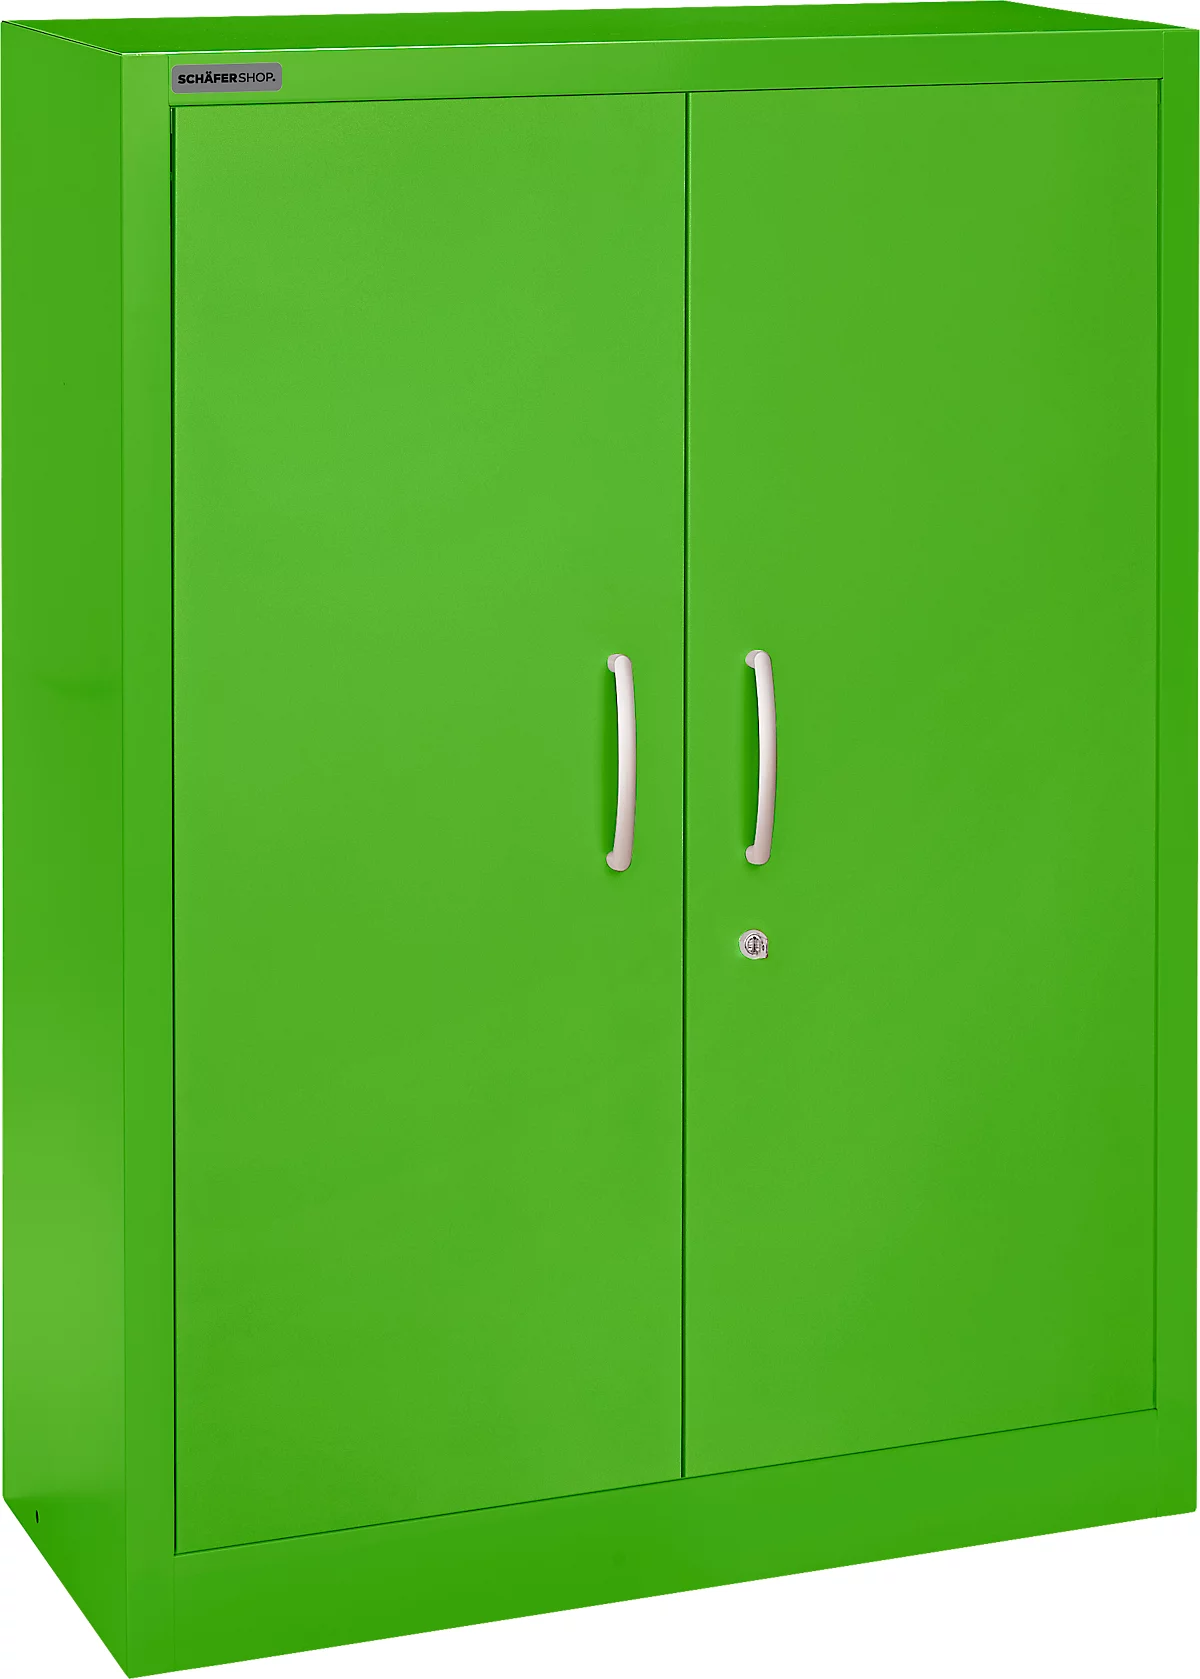 Schäfer Shop Select Armario de puertas batientes MS iCOLOUR, acero, 3 alturas de archivo, An 950 mm, verde manzana RAL 6018